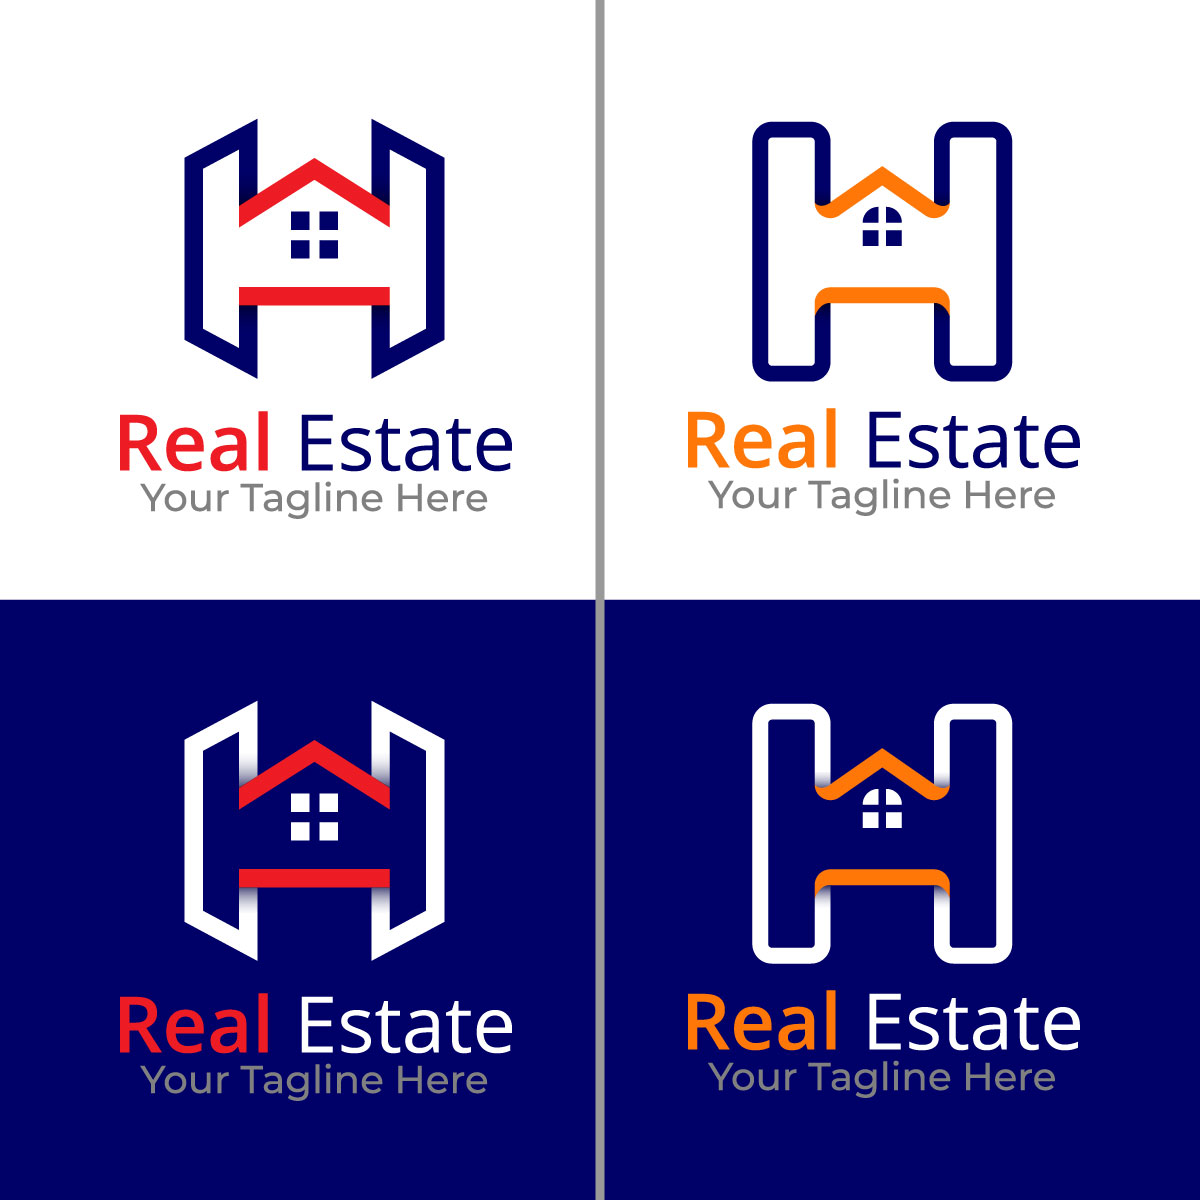 H Letter Real Estate Logo Design cover image.